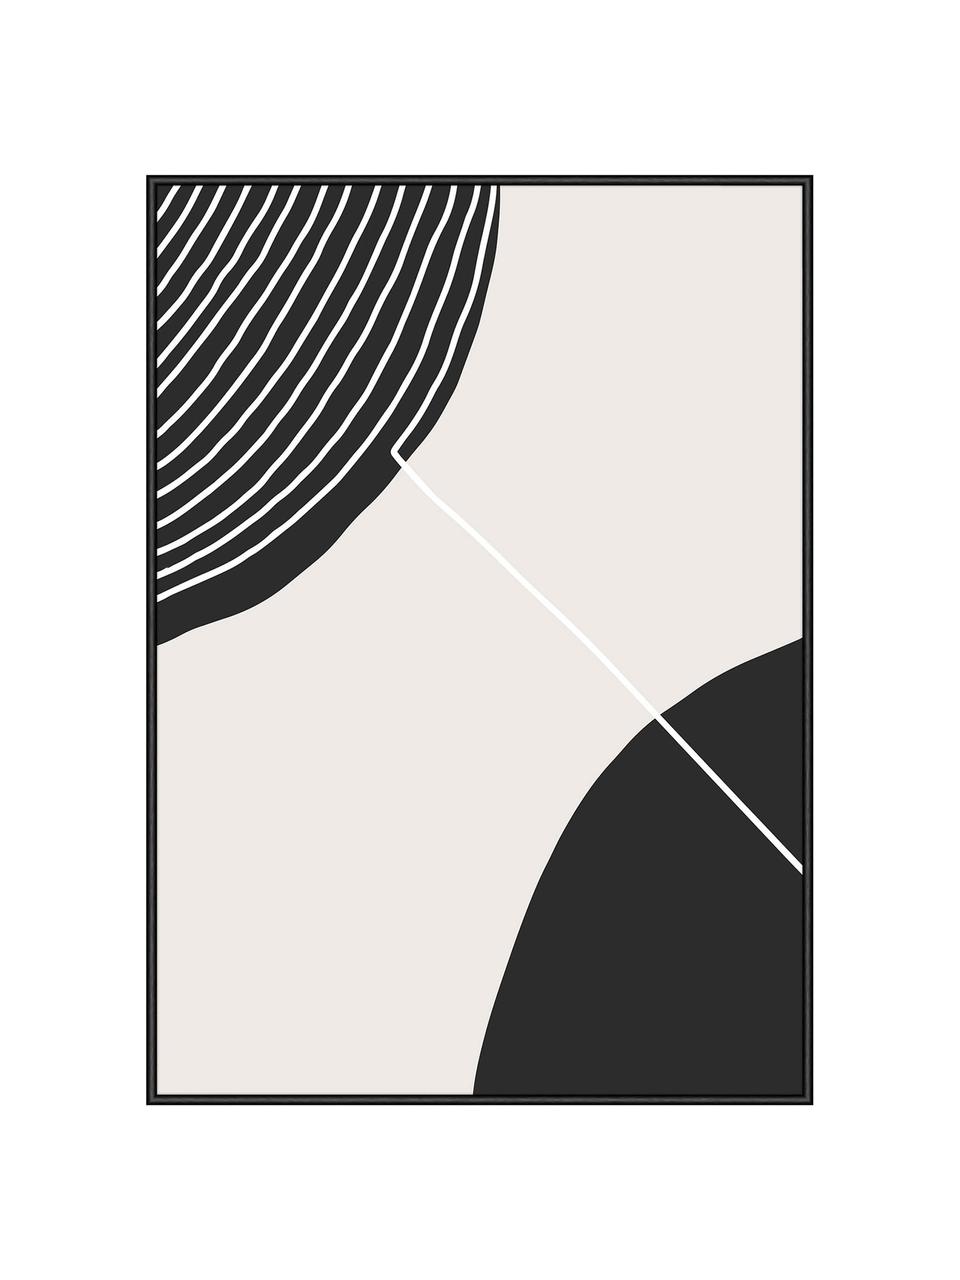 Gerahmter Digitaldruck Feminine Doodles, Bild: Digitaldruck auf Papier, Rahmen: Holz, Mitteldichte Holzfa, Front: Glas, Zwei Punkte, B 52 x H 72 cm